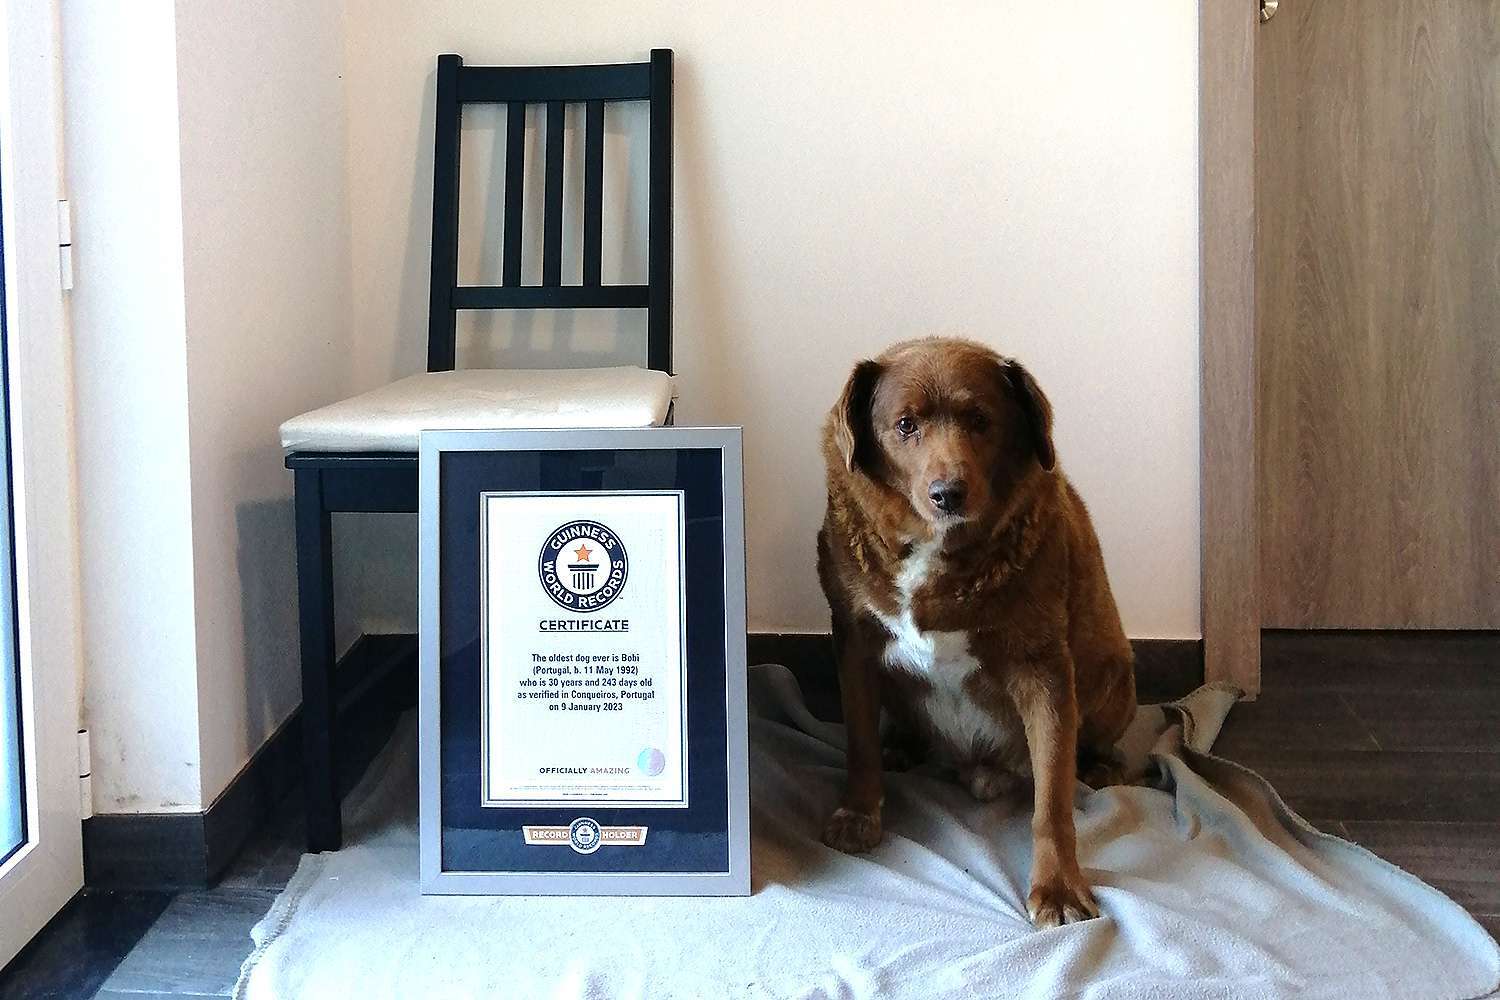 Bobi nevezetű portugál alentejo masztiff, világrekorder életkorú kutya